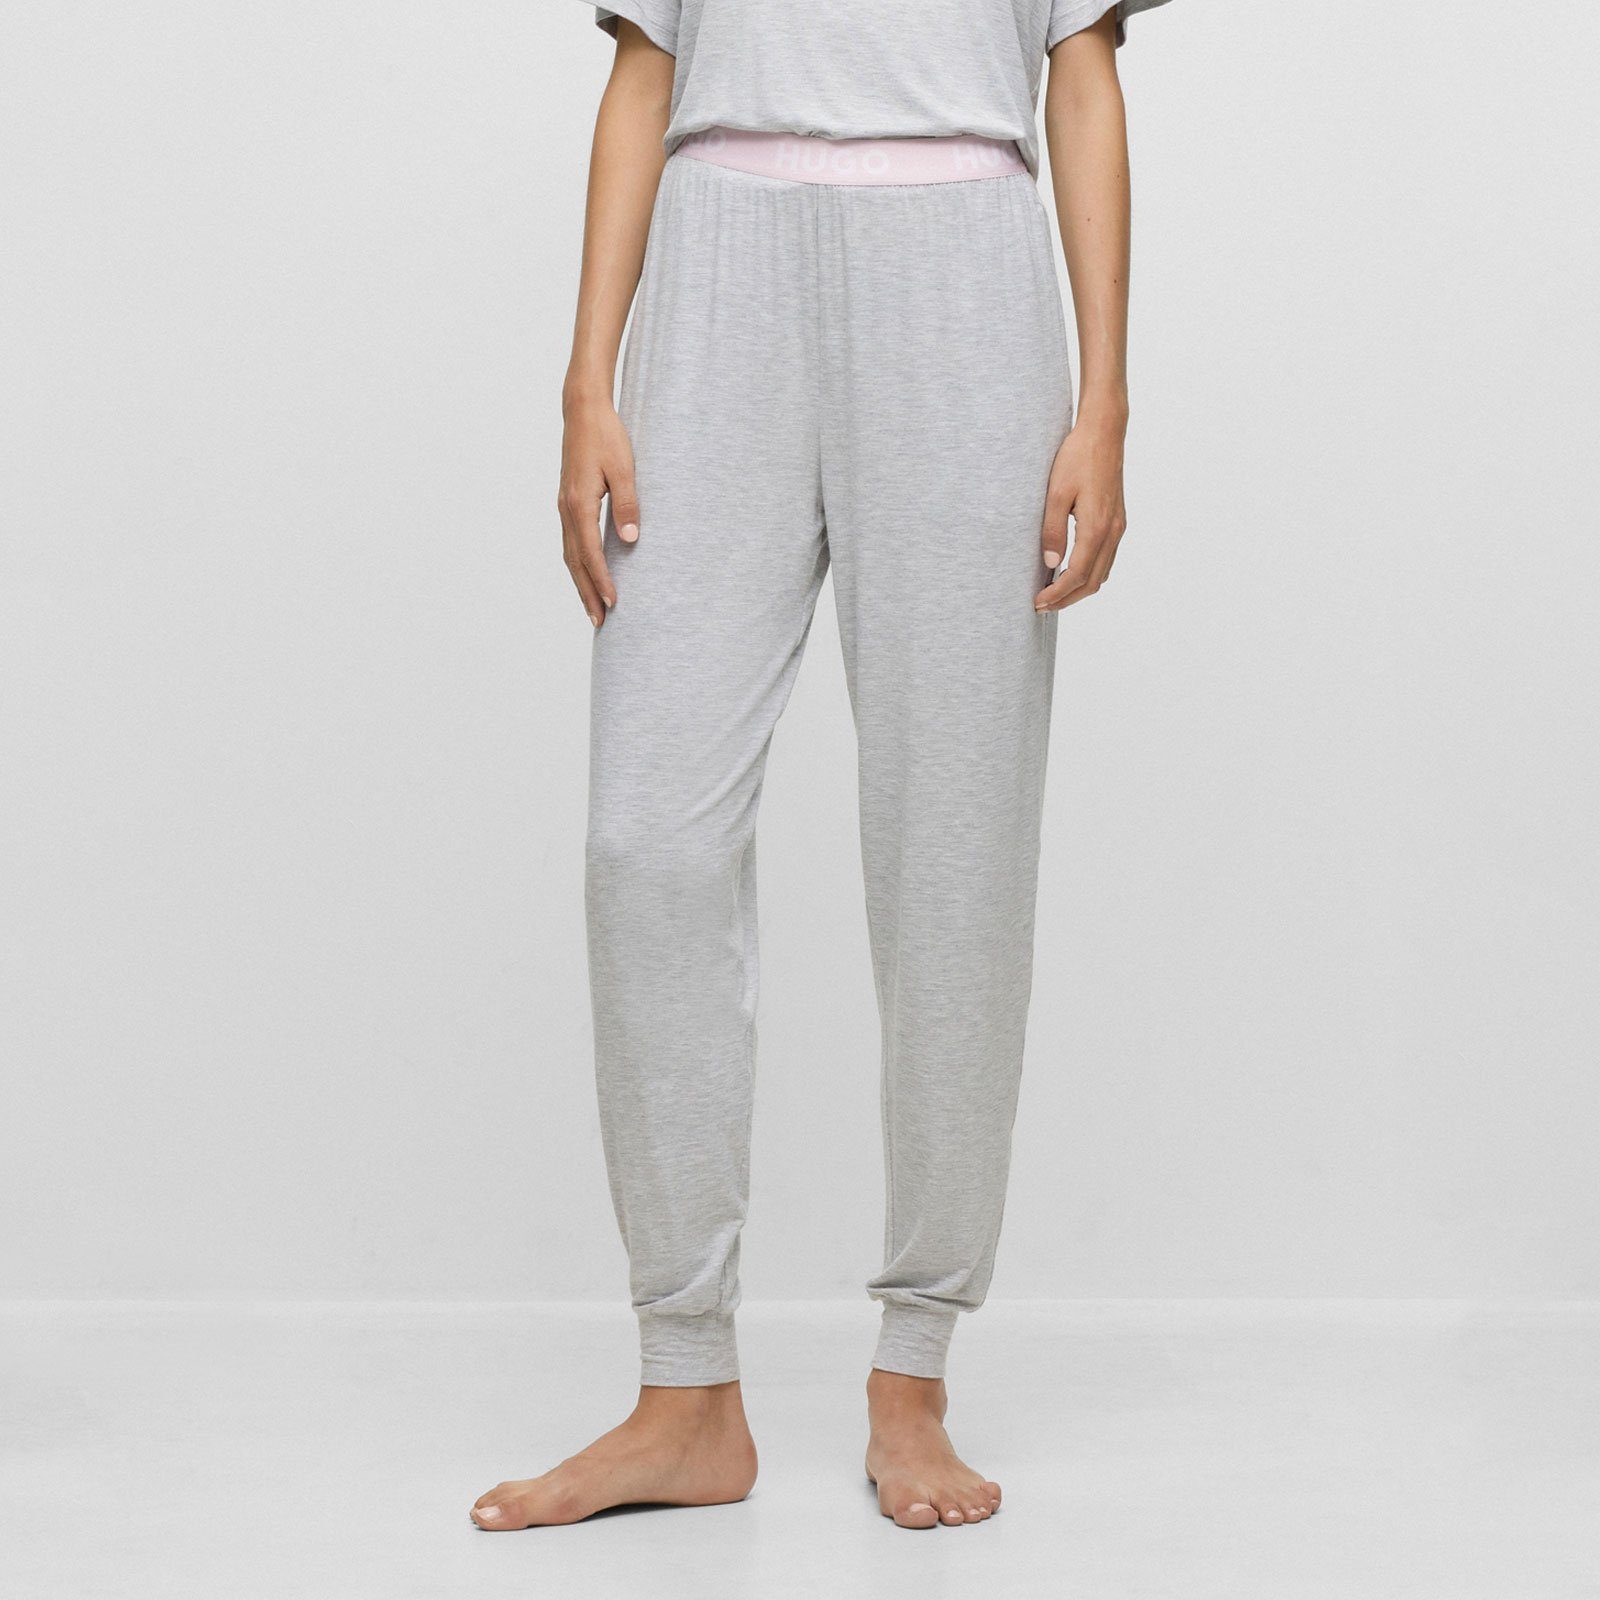 Pants Unite grey mit sichtbarem Marken-Logos Pyjamahose Bund HUGO 035 mit